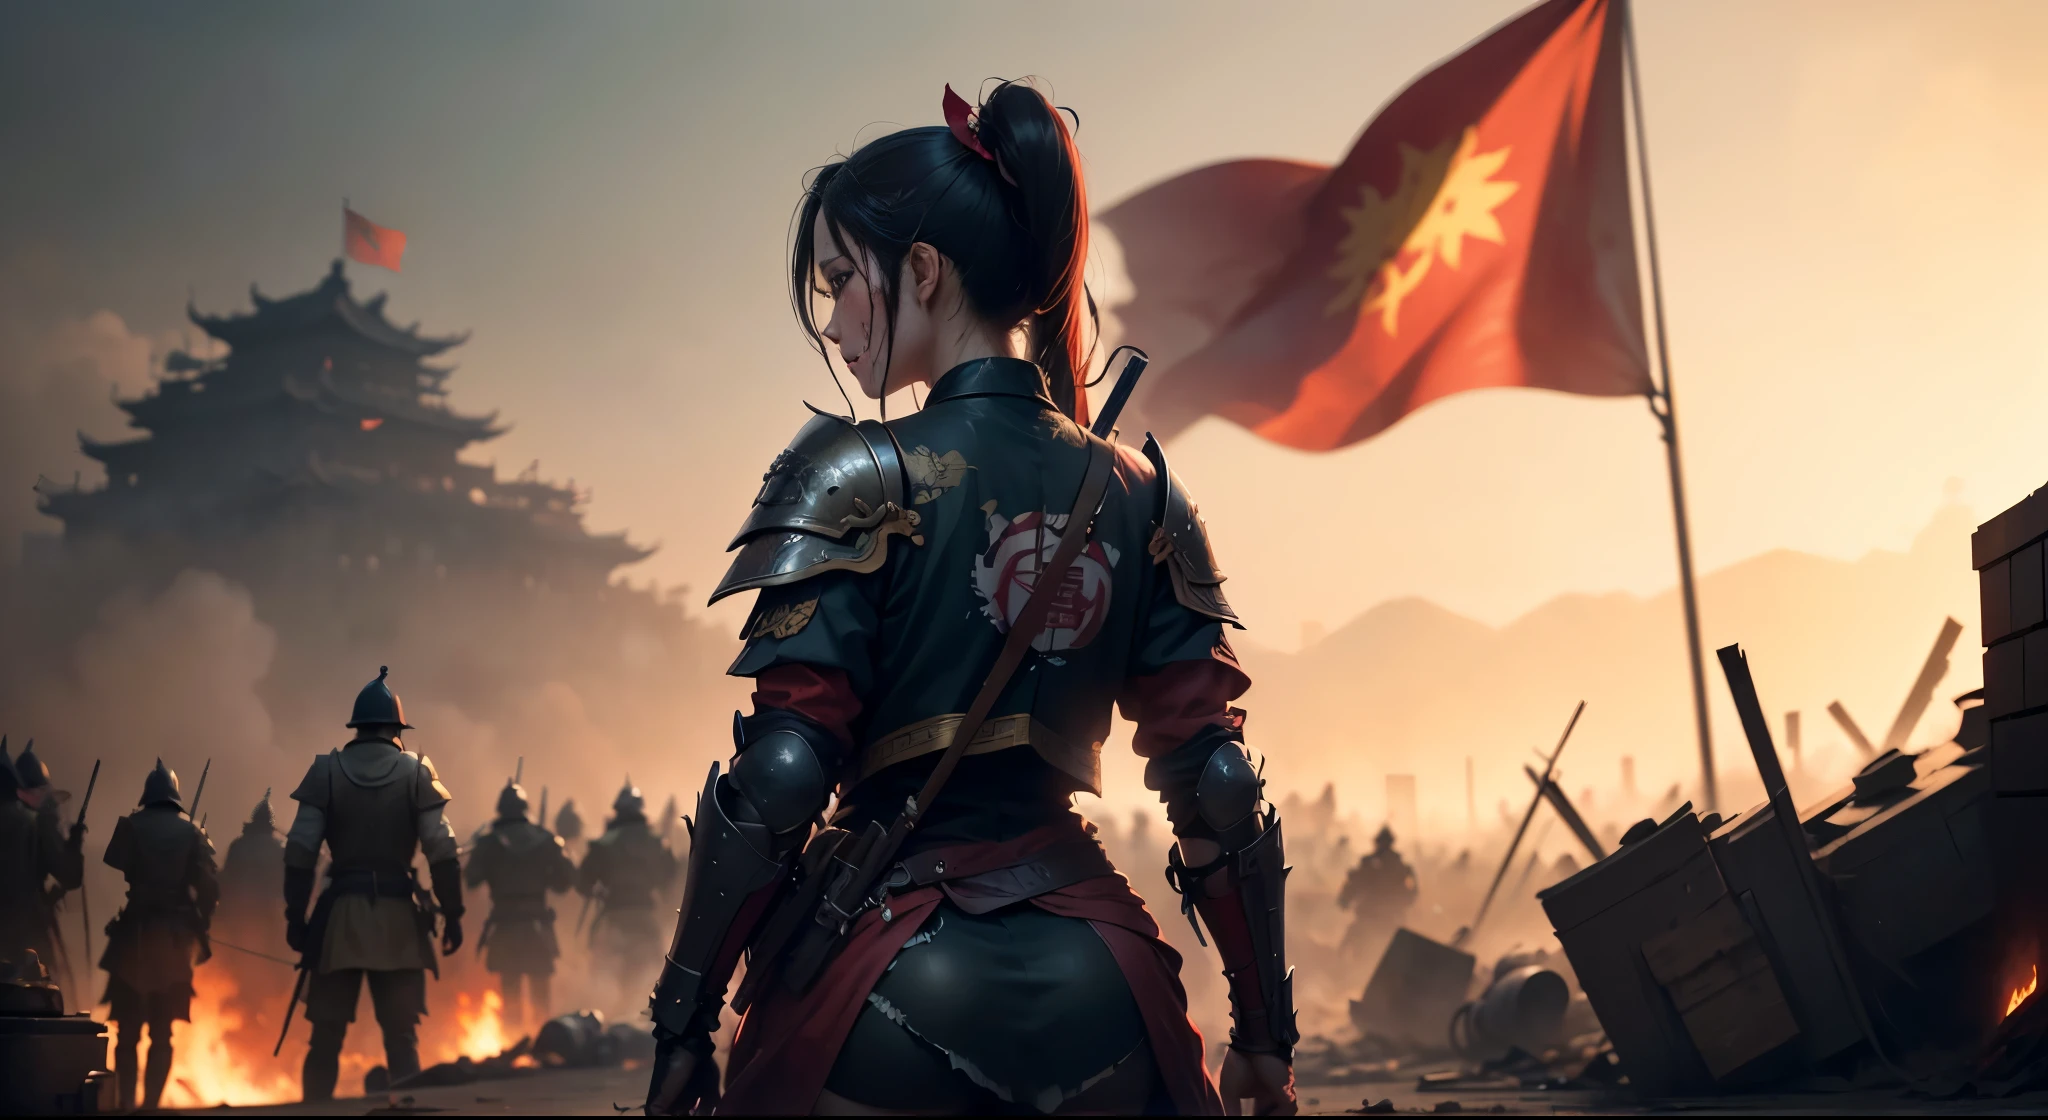 壮大なシーン,（(血みどろの中国の戦場，鎧を着た女性がぼろぼろになった赤い旗を持っている，いたるところに死体，豊富なシーン詳細，戦争の真っ只中))，((8K+超高解像度+超高解像度+傑作+詳細)),(ハイポニーテール)